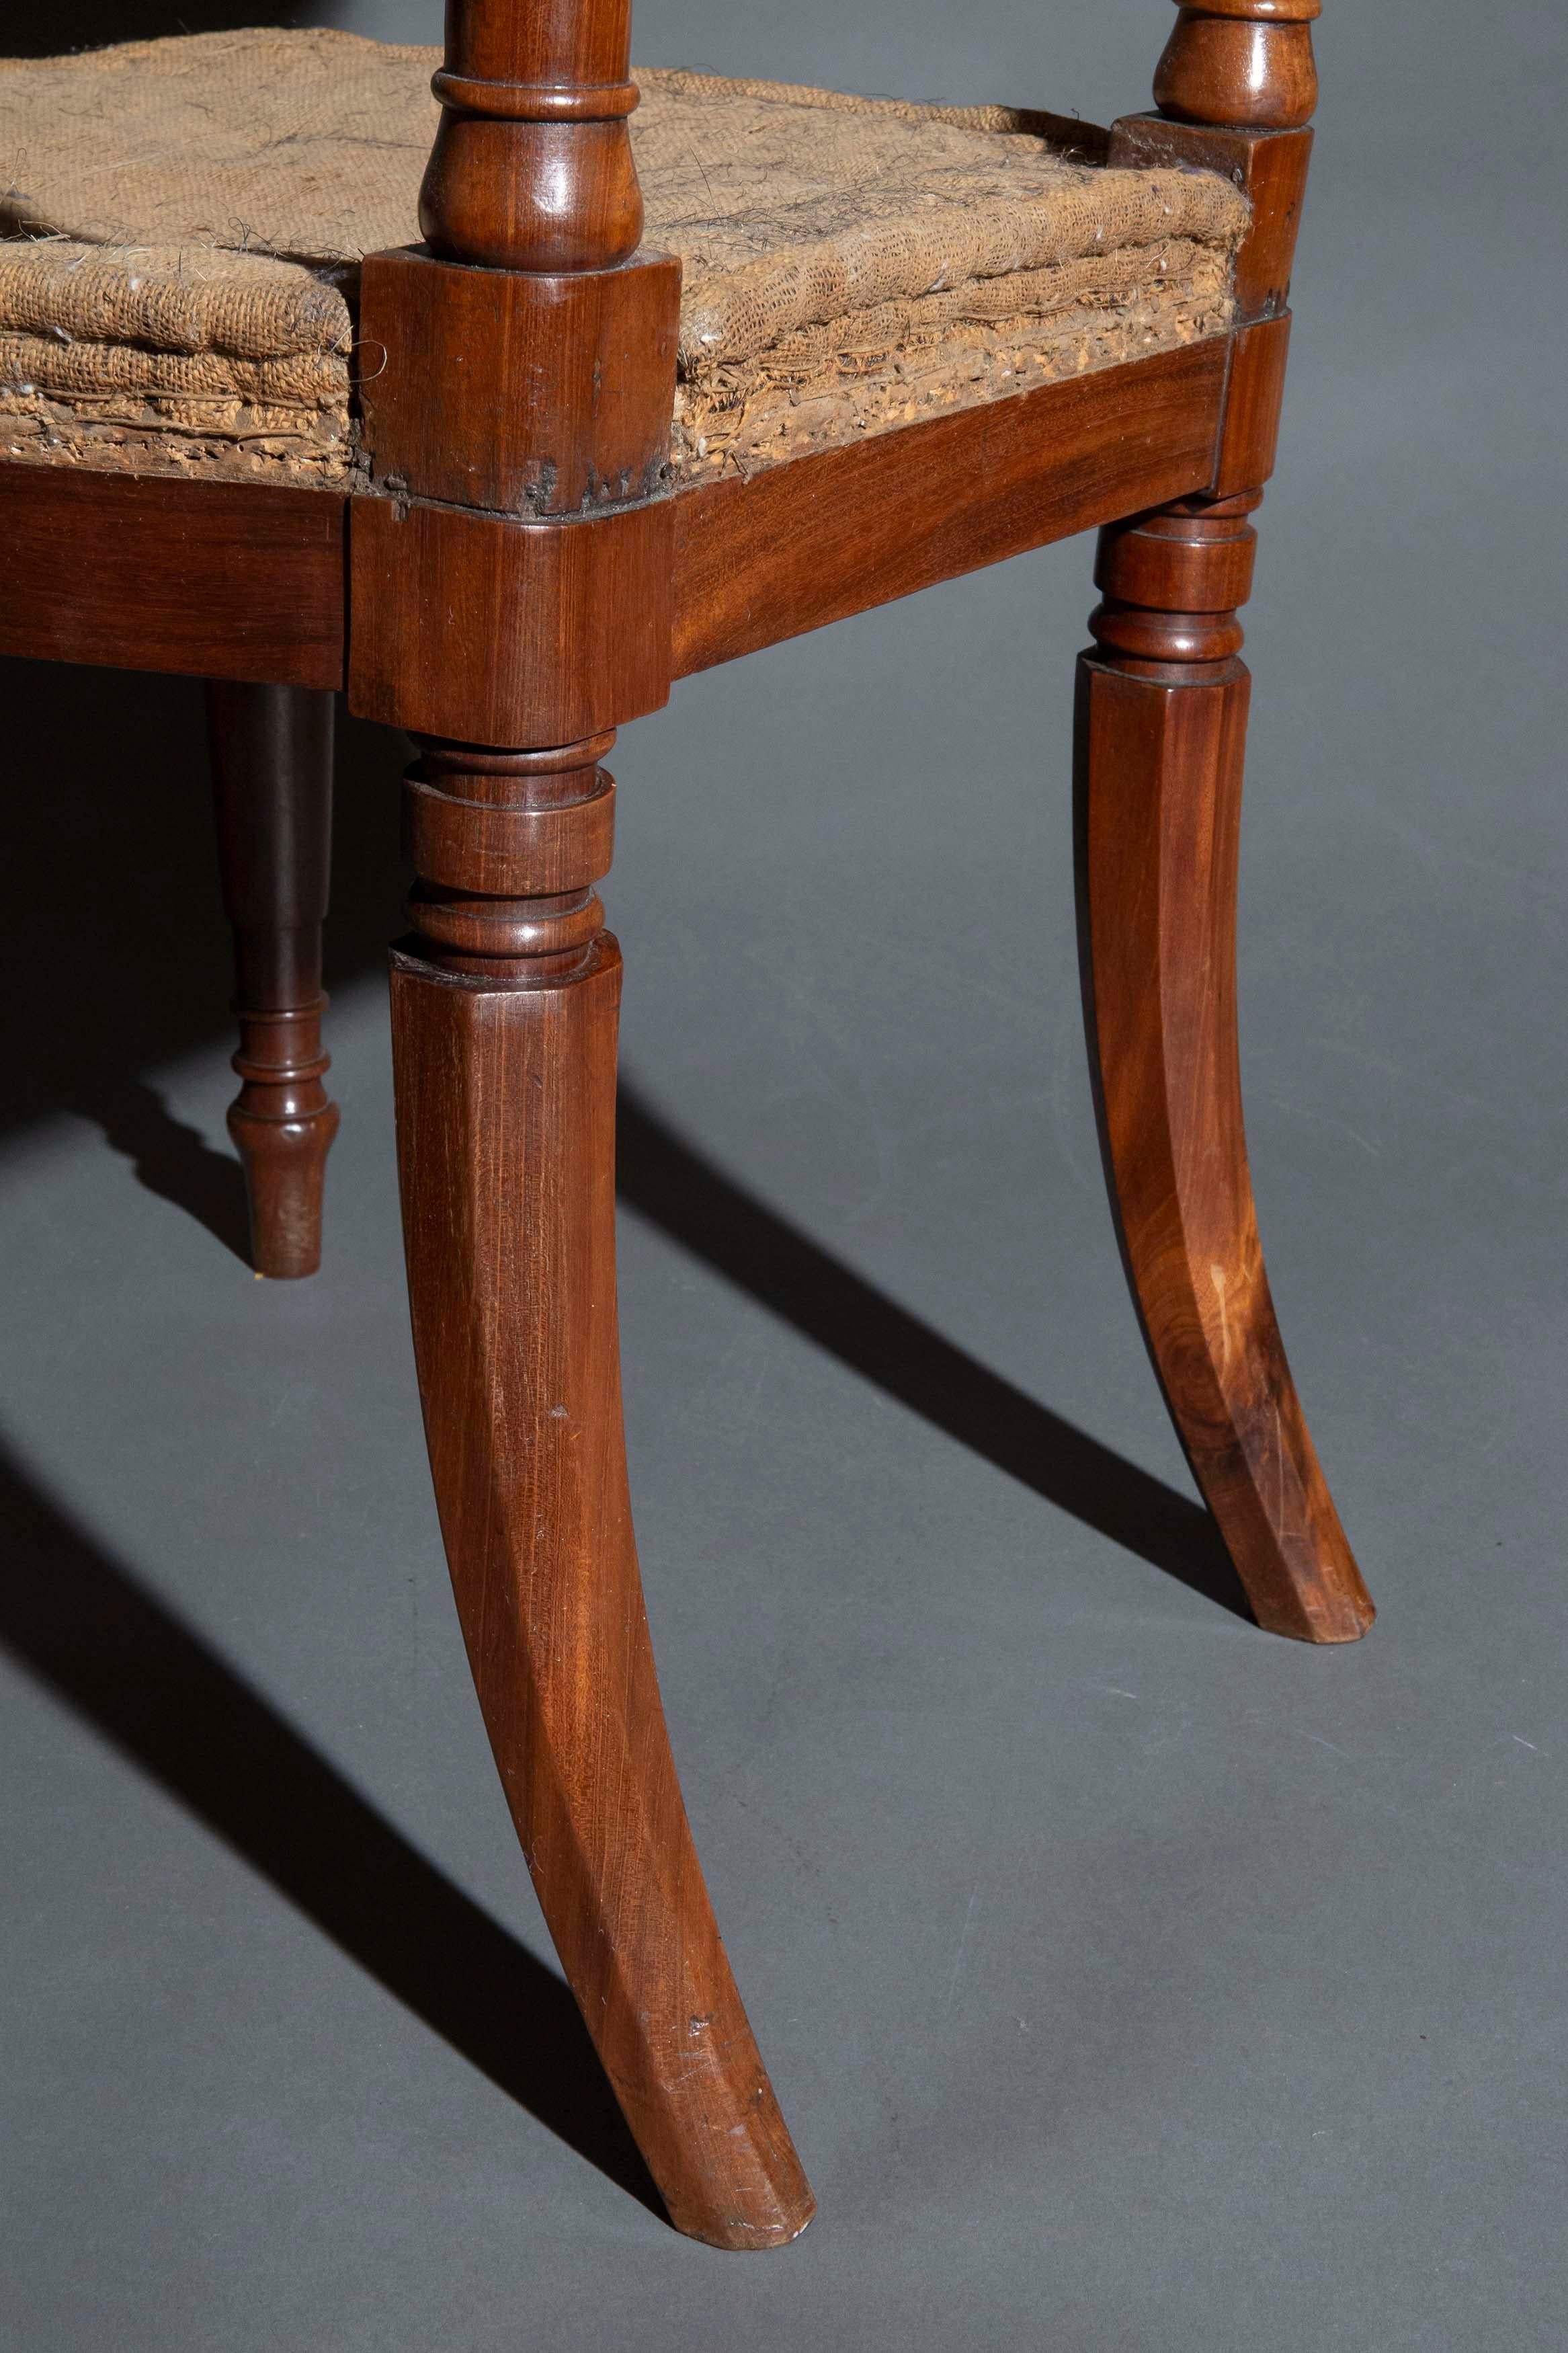 Choix du collectionneur - une très belle et rare paire de chaises en acajou de la période Regency, fermement attribuée à George Bullock. Angleterre, vers 1815.

Pourquoi nous les aimons
Ces chaises de superbe qualité, merveilleusement élégantes et